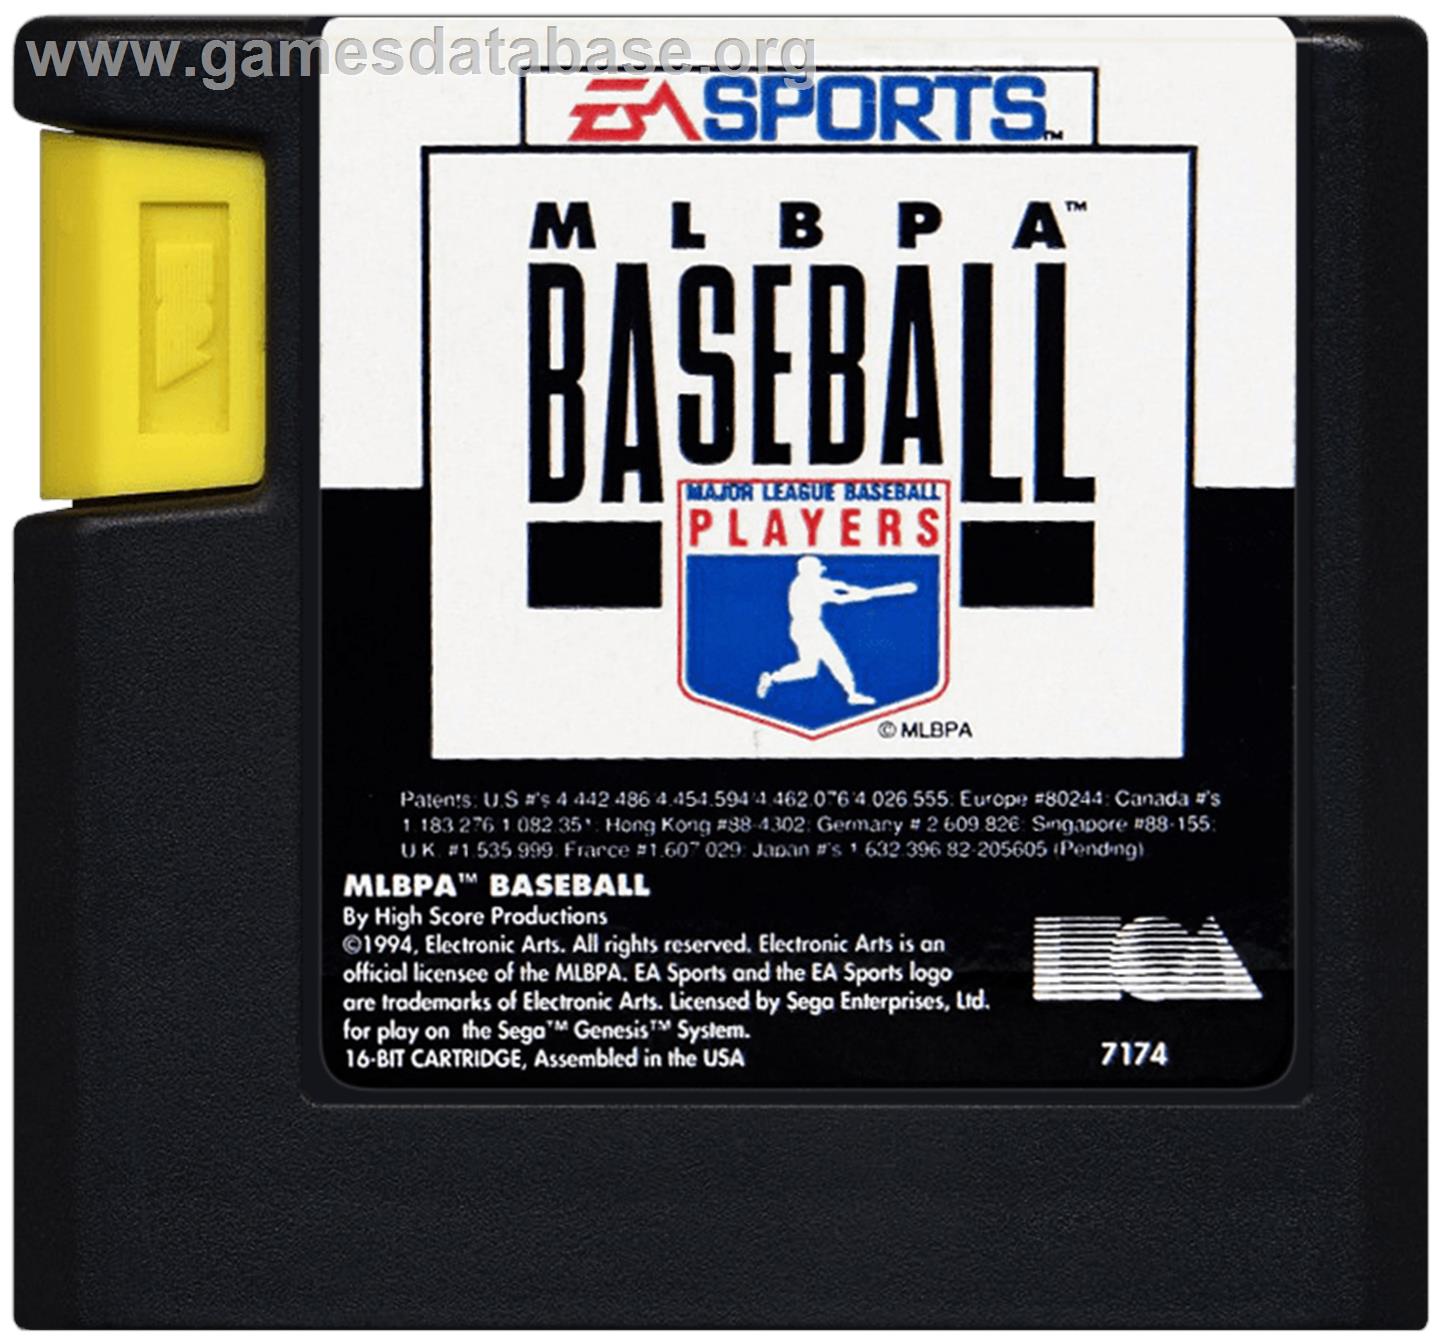 MLBPA Baseball - Sega Genesis - Artwork - Cartridge